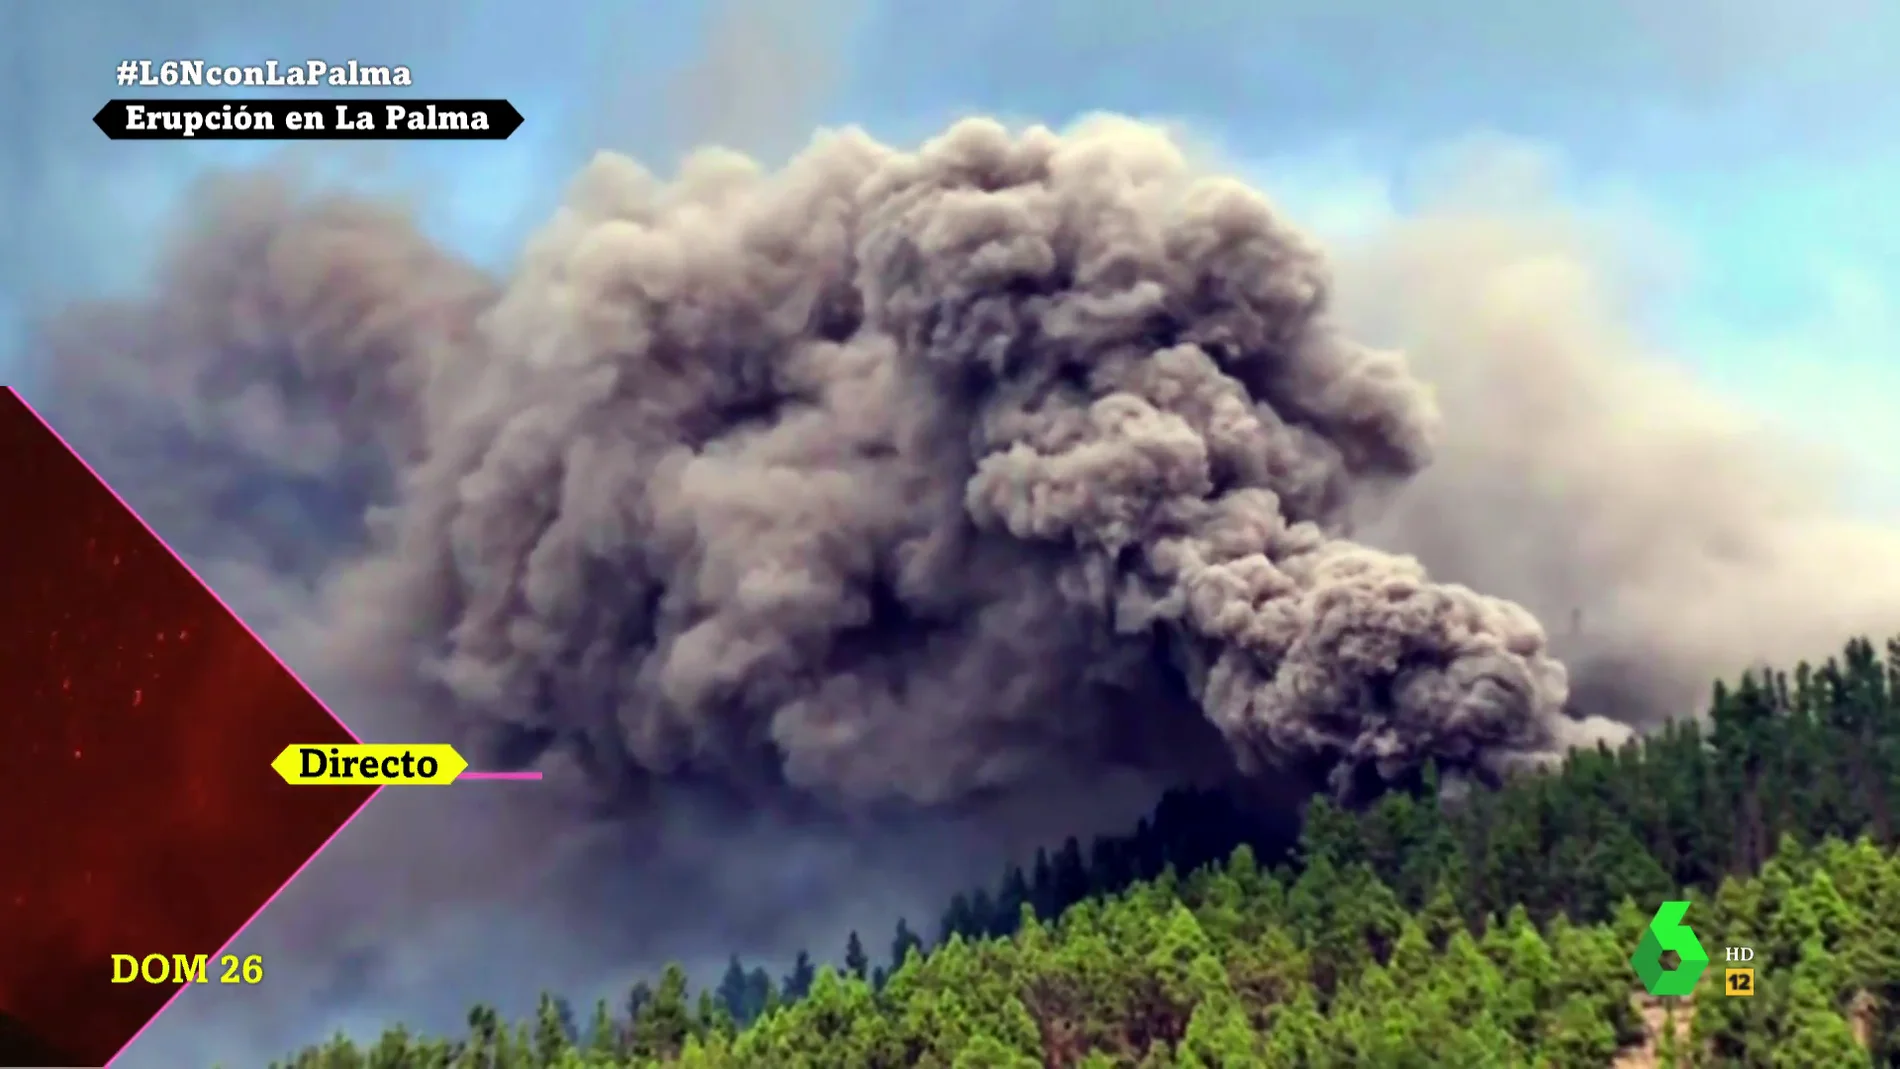 Historia de una erupción: el vídeo que resume en tres minutos una semana agónica en La Palma